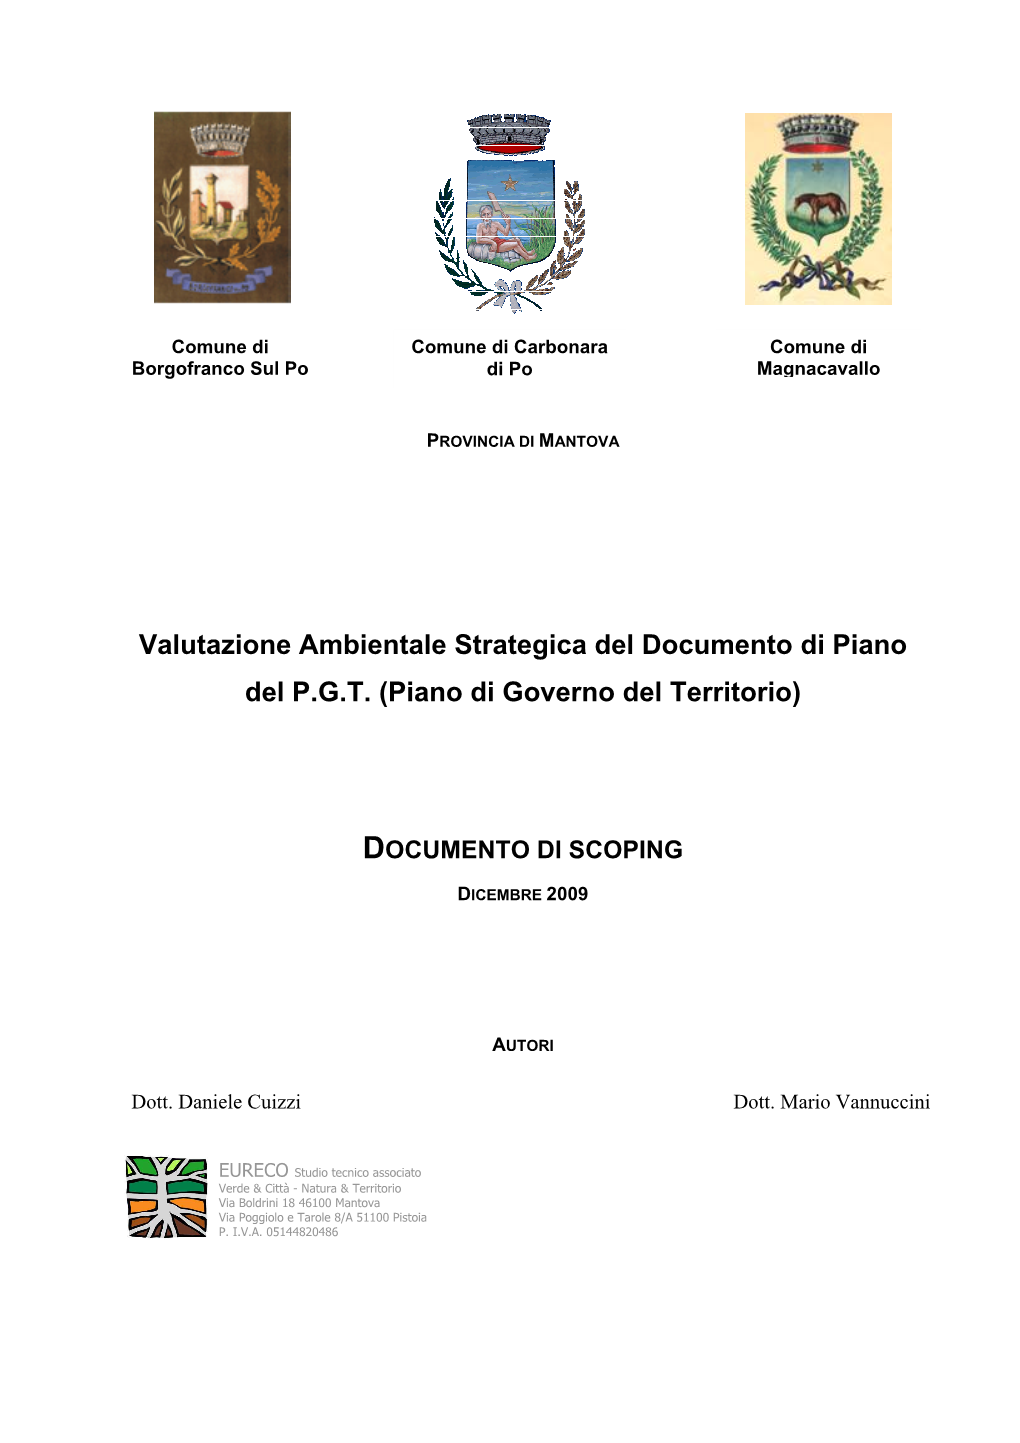 Valutazione Ambientale Strategica Del Documento Di Piano Del P.G.T